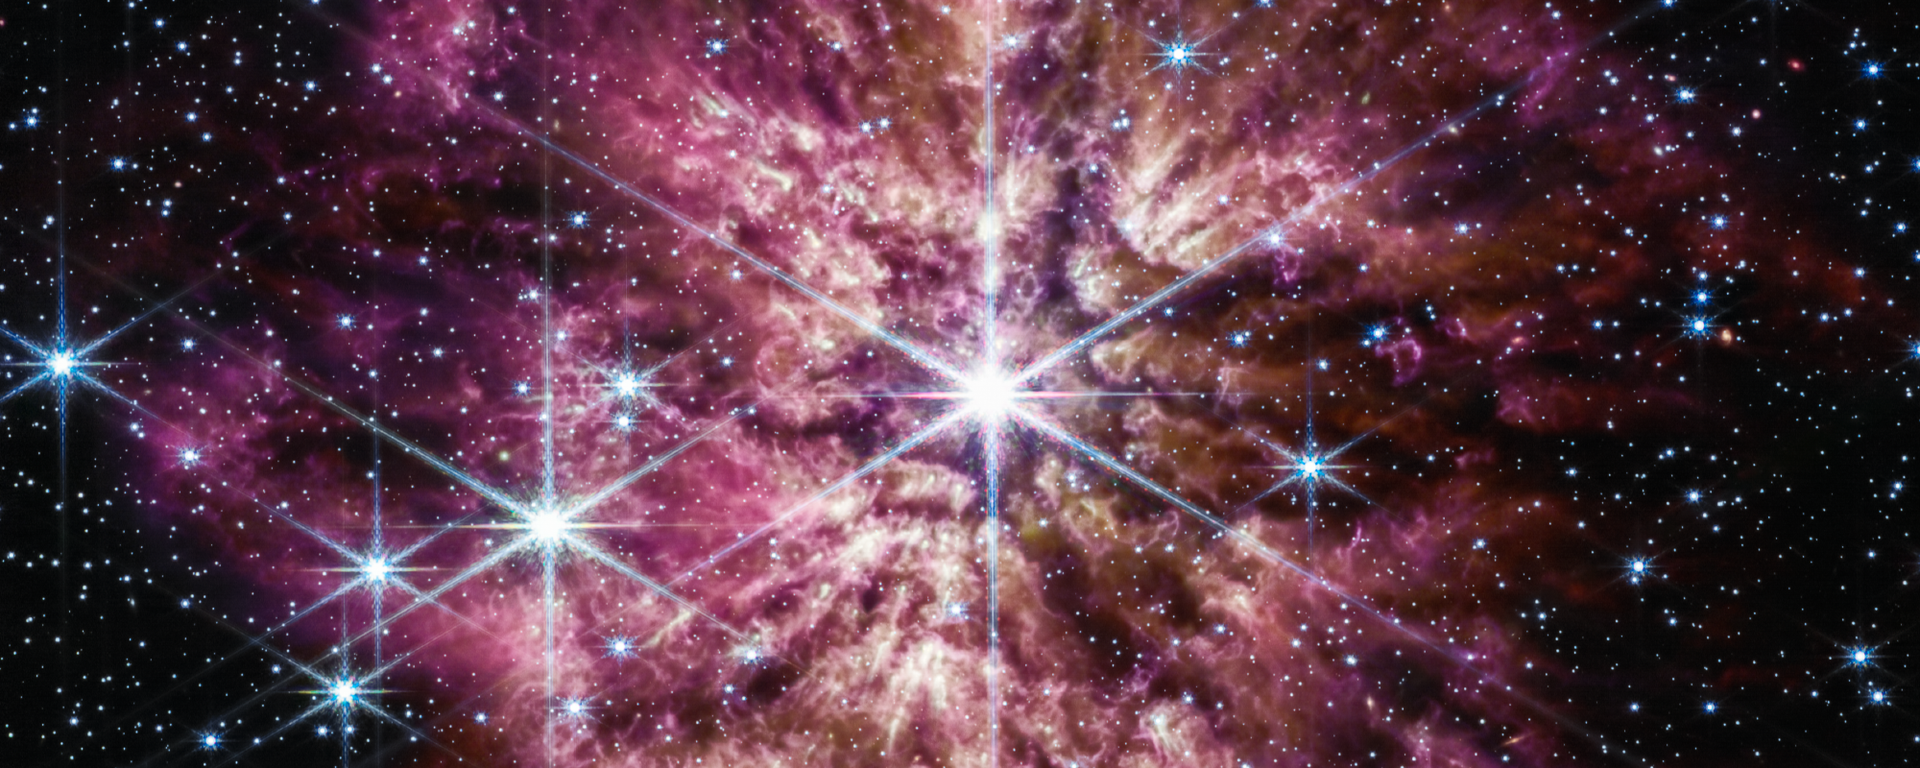 Image of star WR 124 taken by James Webb Space Telescope - Sputnik International, 1920, 15.06.2023